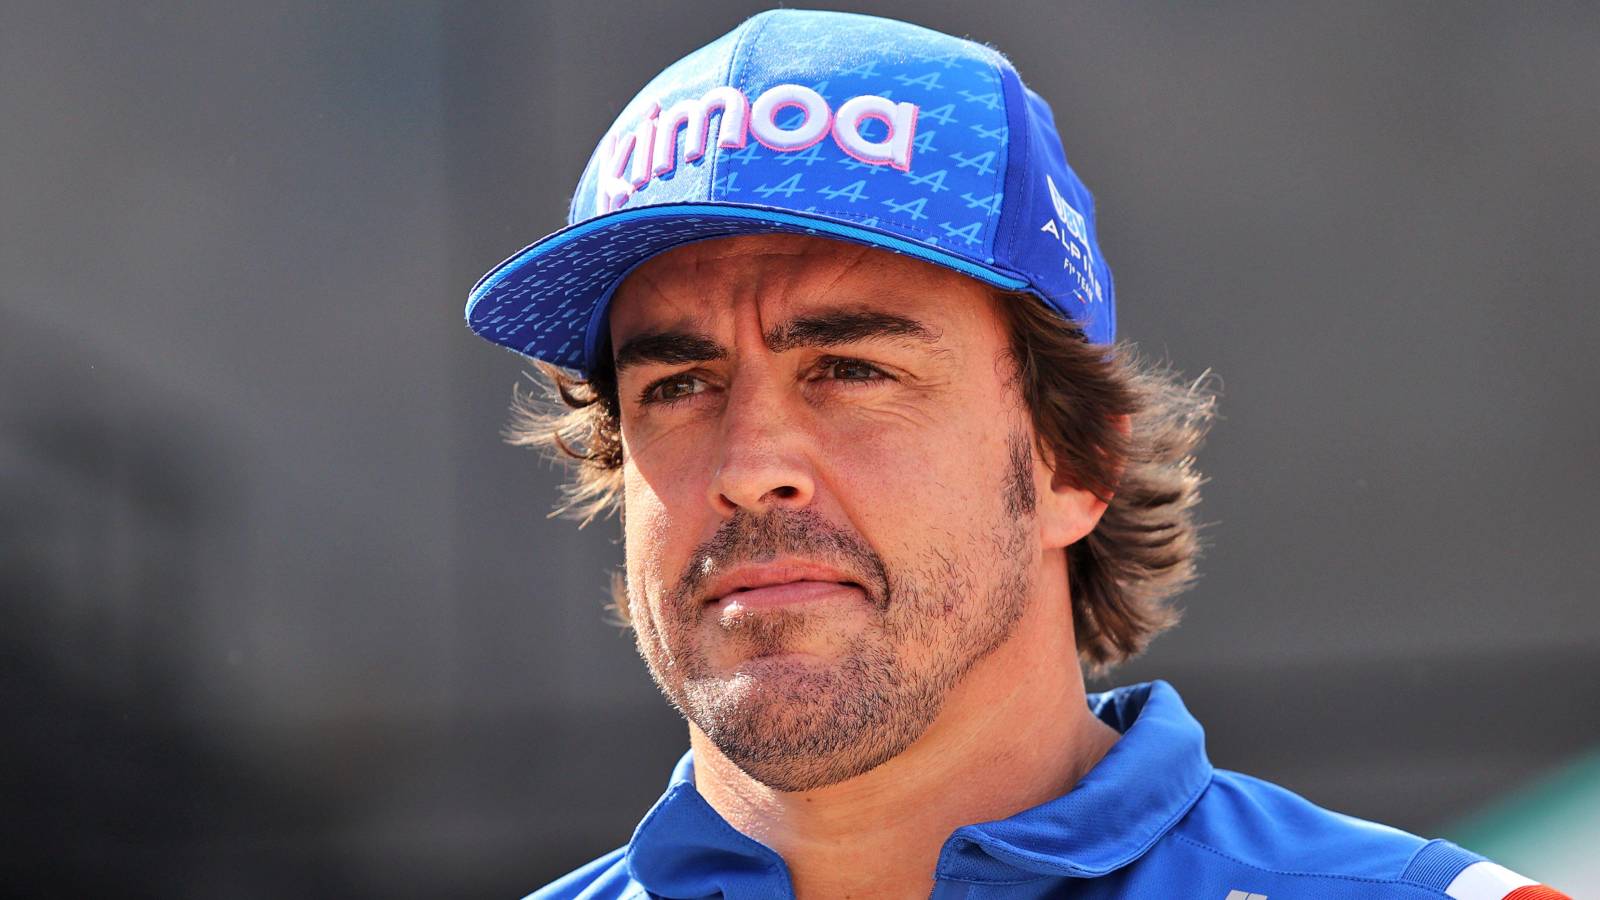 Fernando Alonso wearing Alpine team gear. Hungary, July 2022.